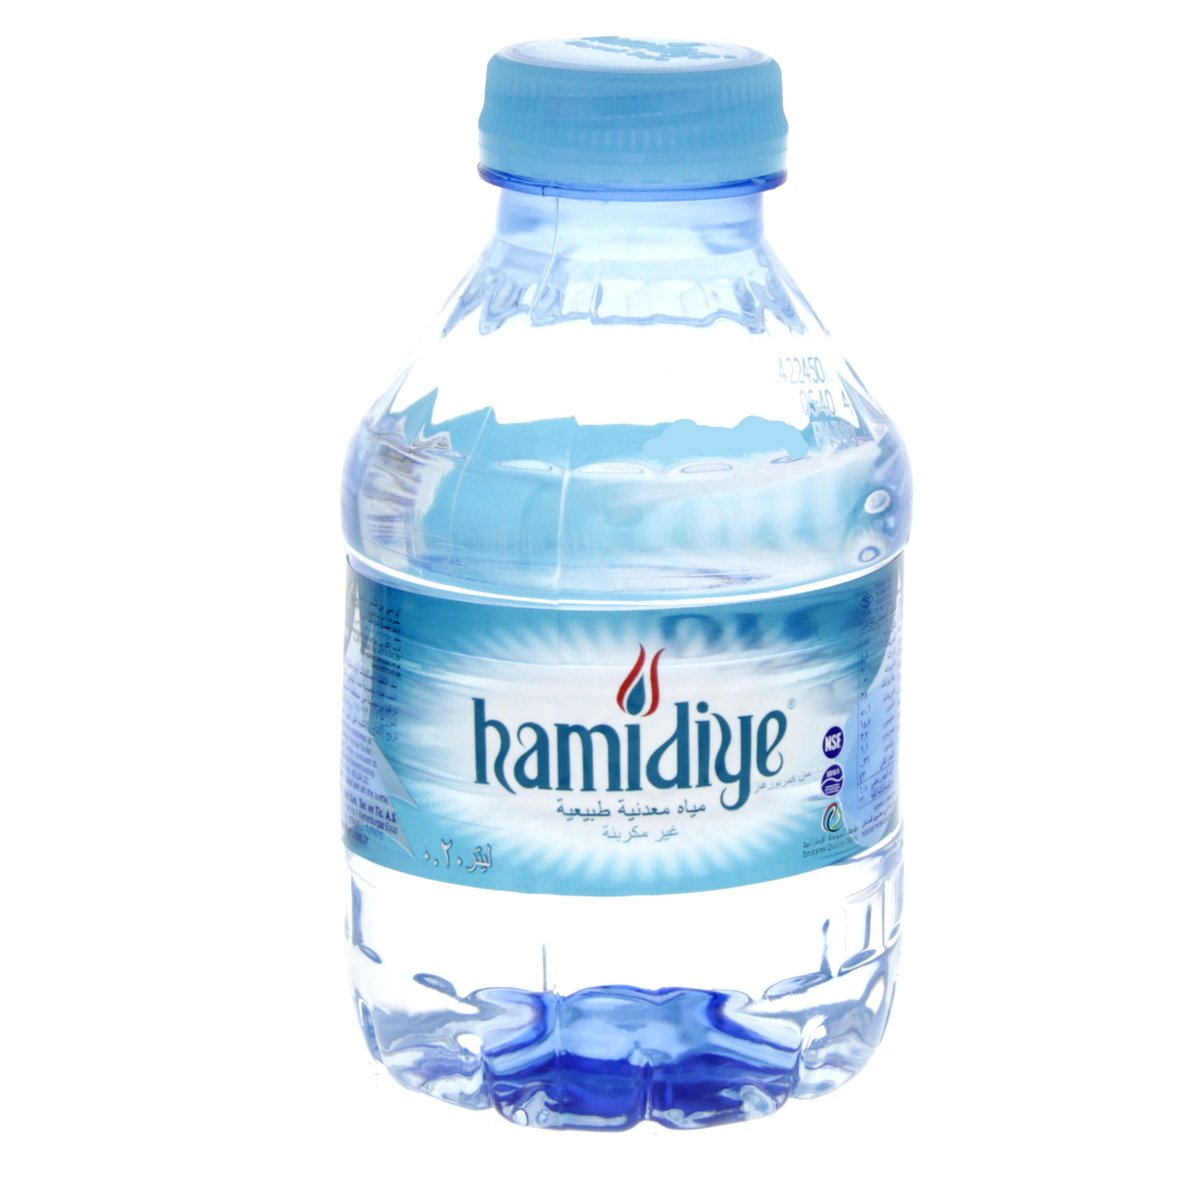 Hamidiye Natural Mineral Water 12 x 200 ml